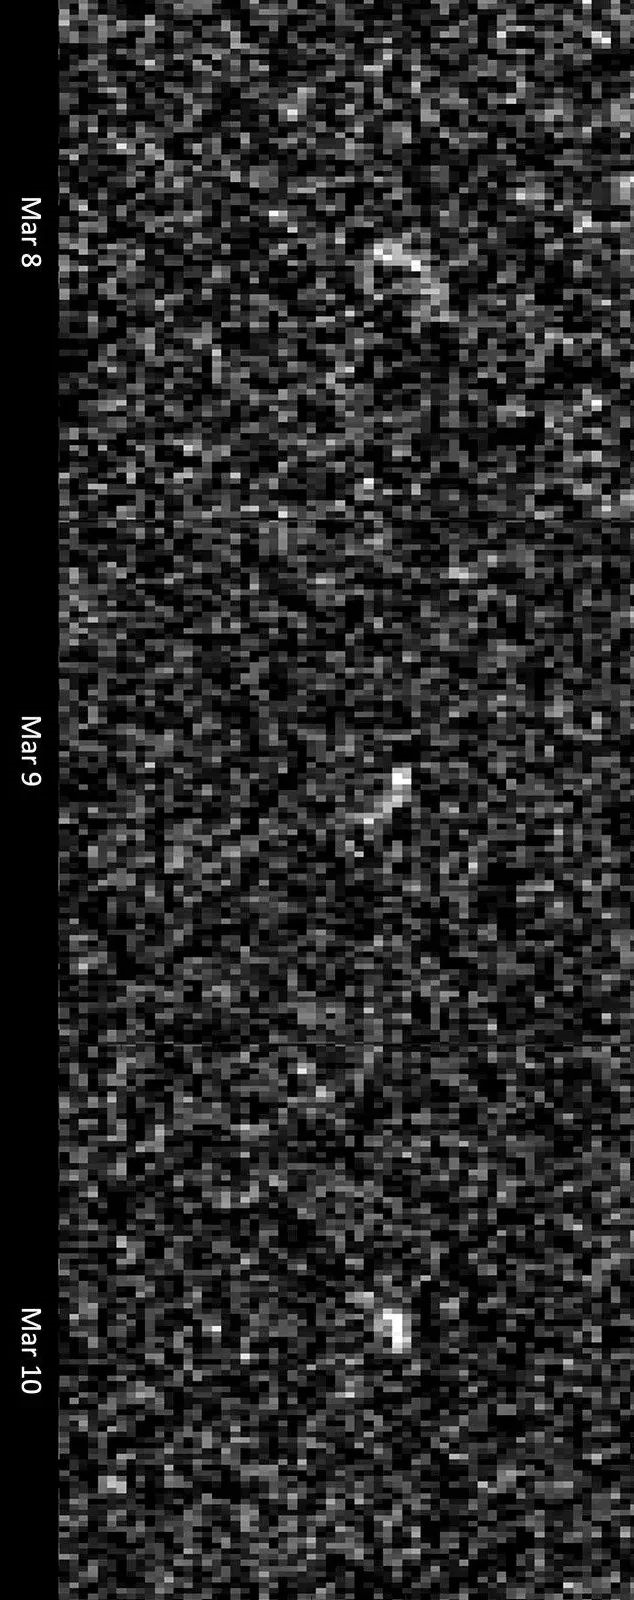 305米的小行星“毁神星”5年后贴脸擦过地球：不排除撞击